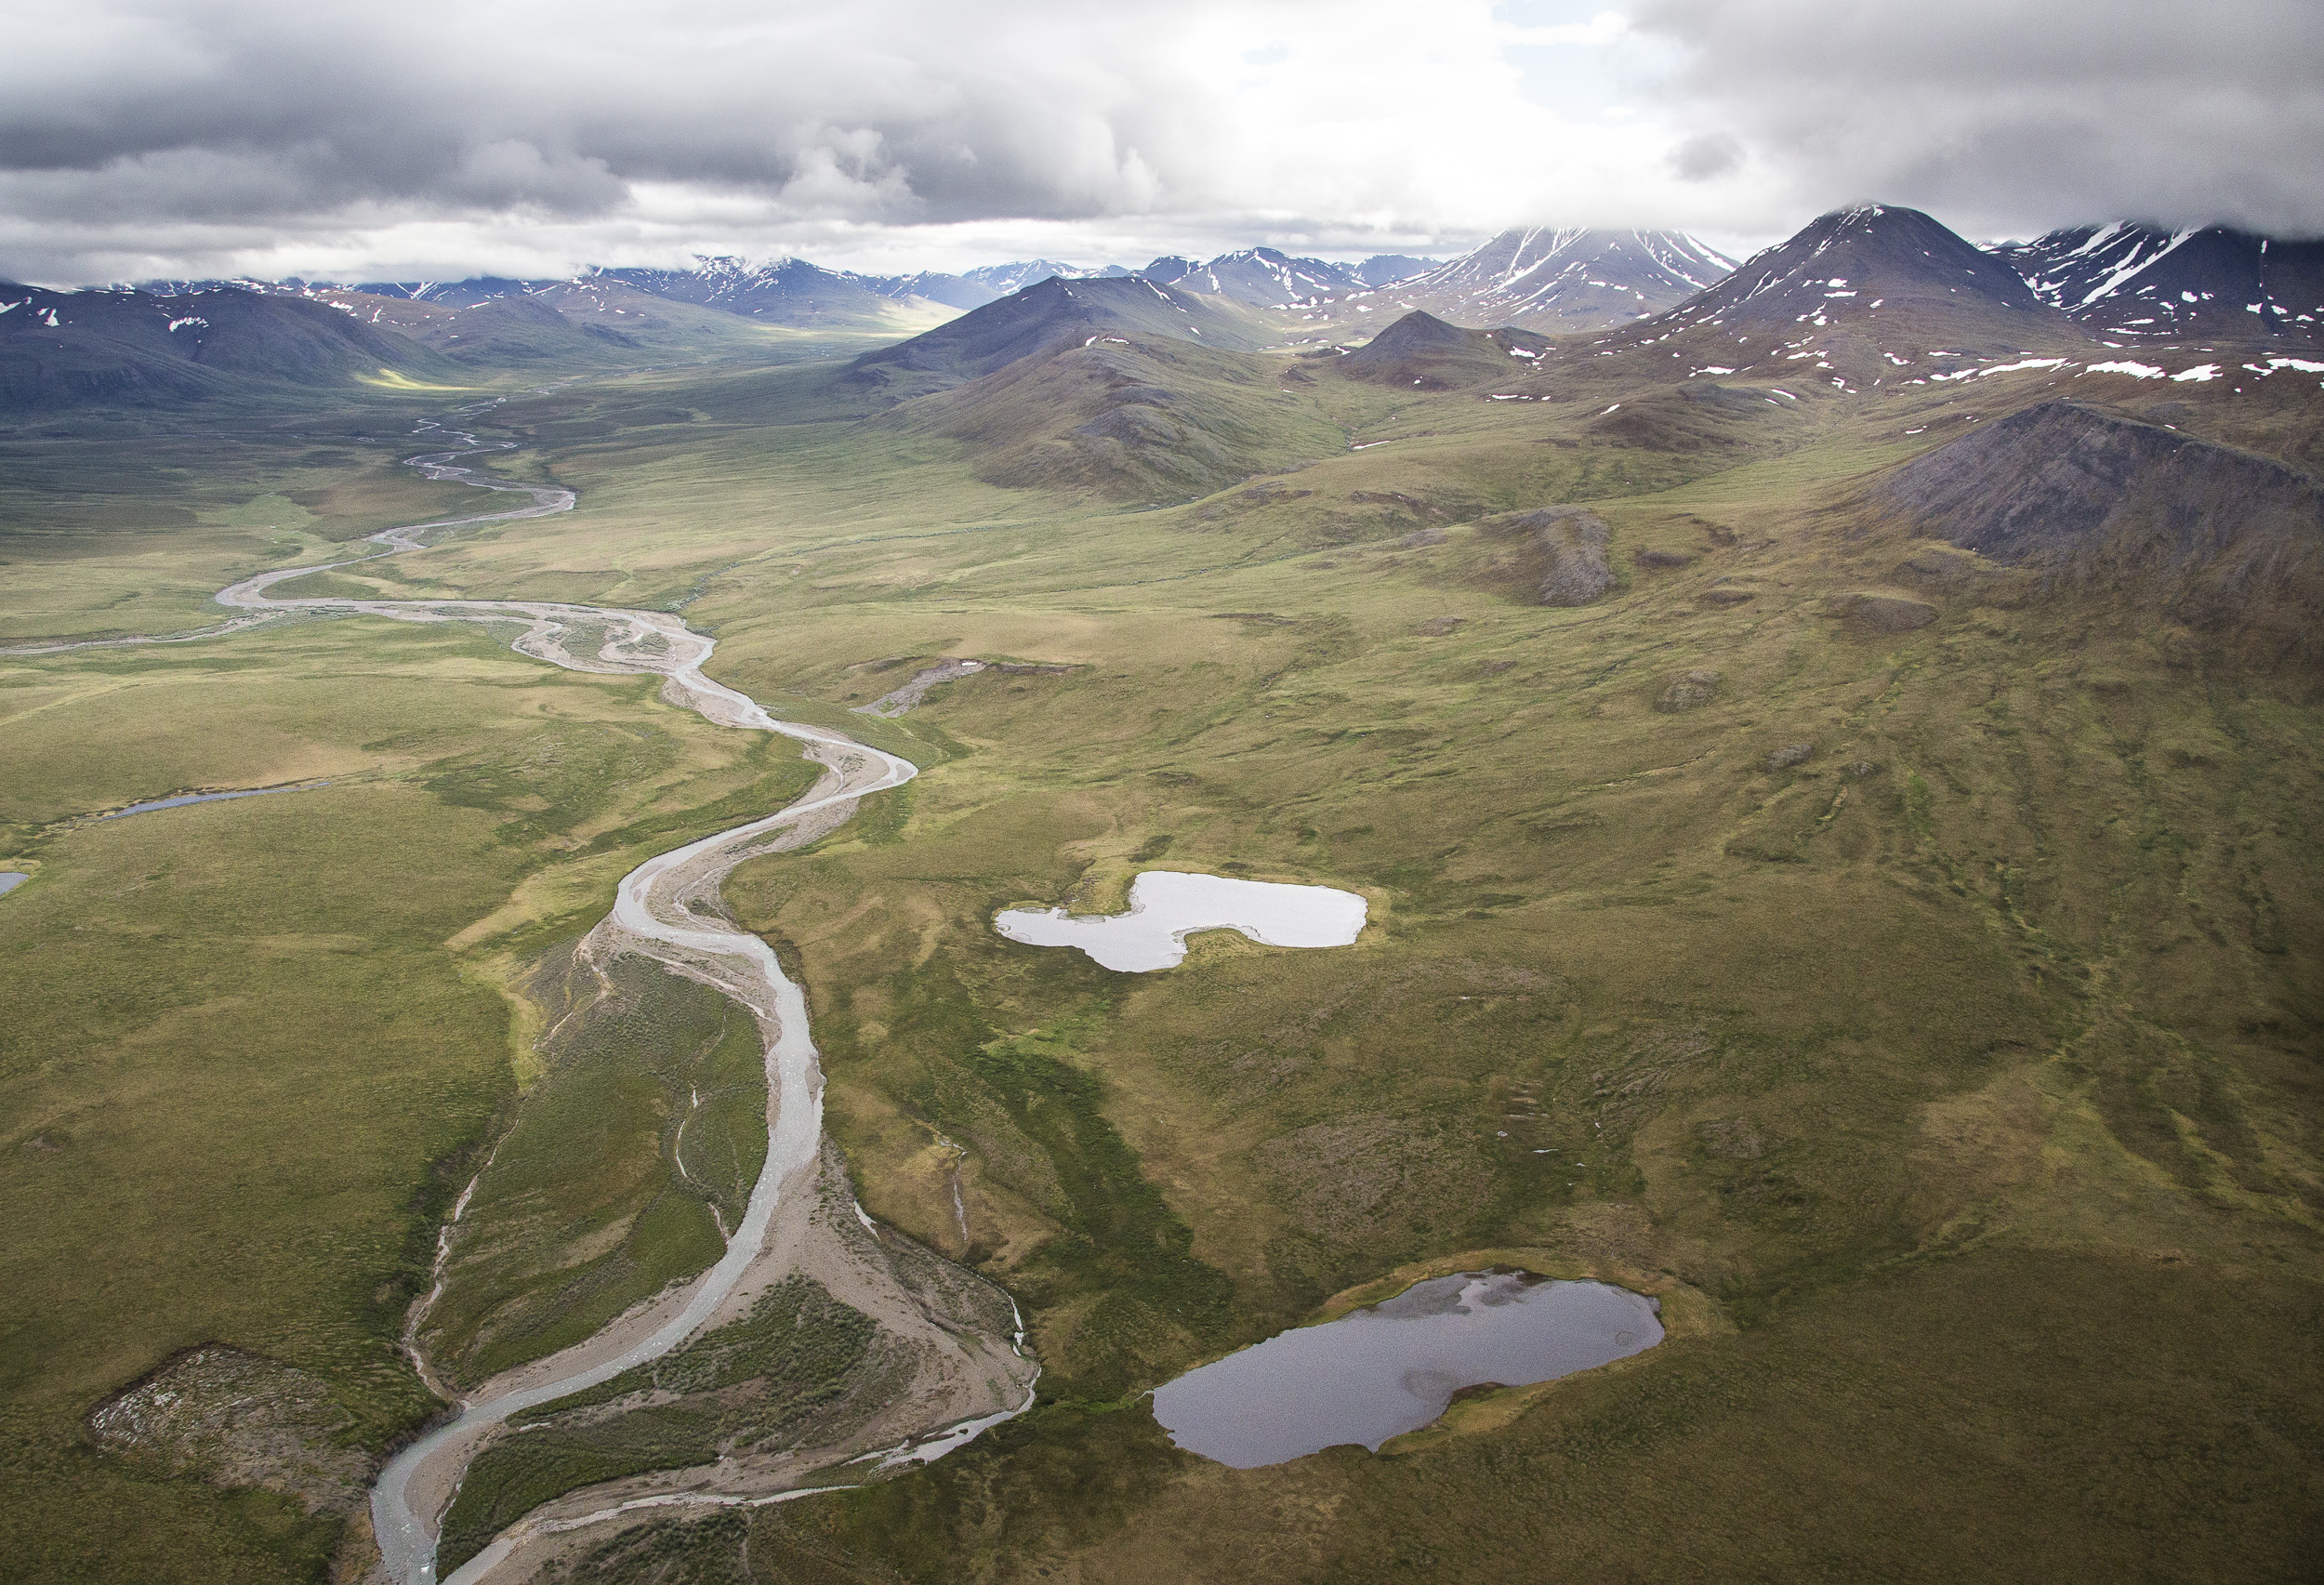 中央北极管理区——一个BLM荒野研究区——位于阿拉斯加北极国家公园和NPRA之间。这片鲜为人知的32万英亩土地由连绵起伏的苔原和白雪覆盖的山峰组成，非常美丽。